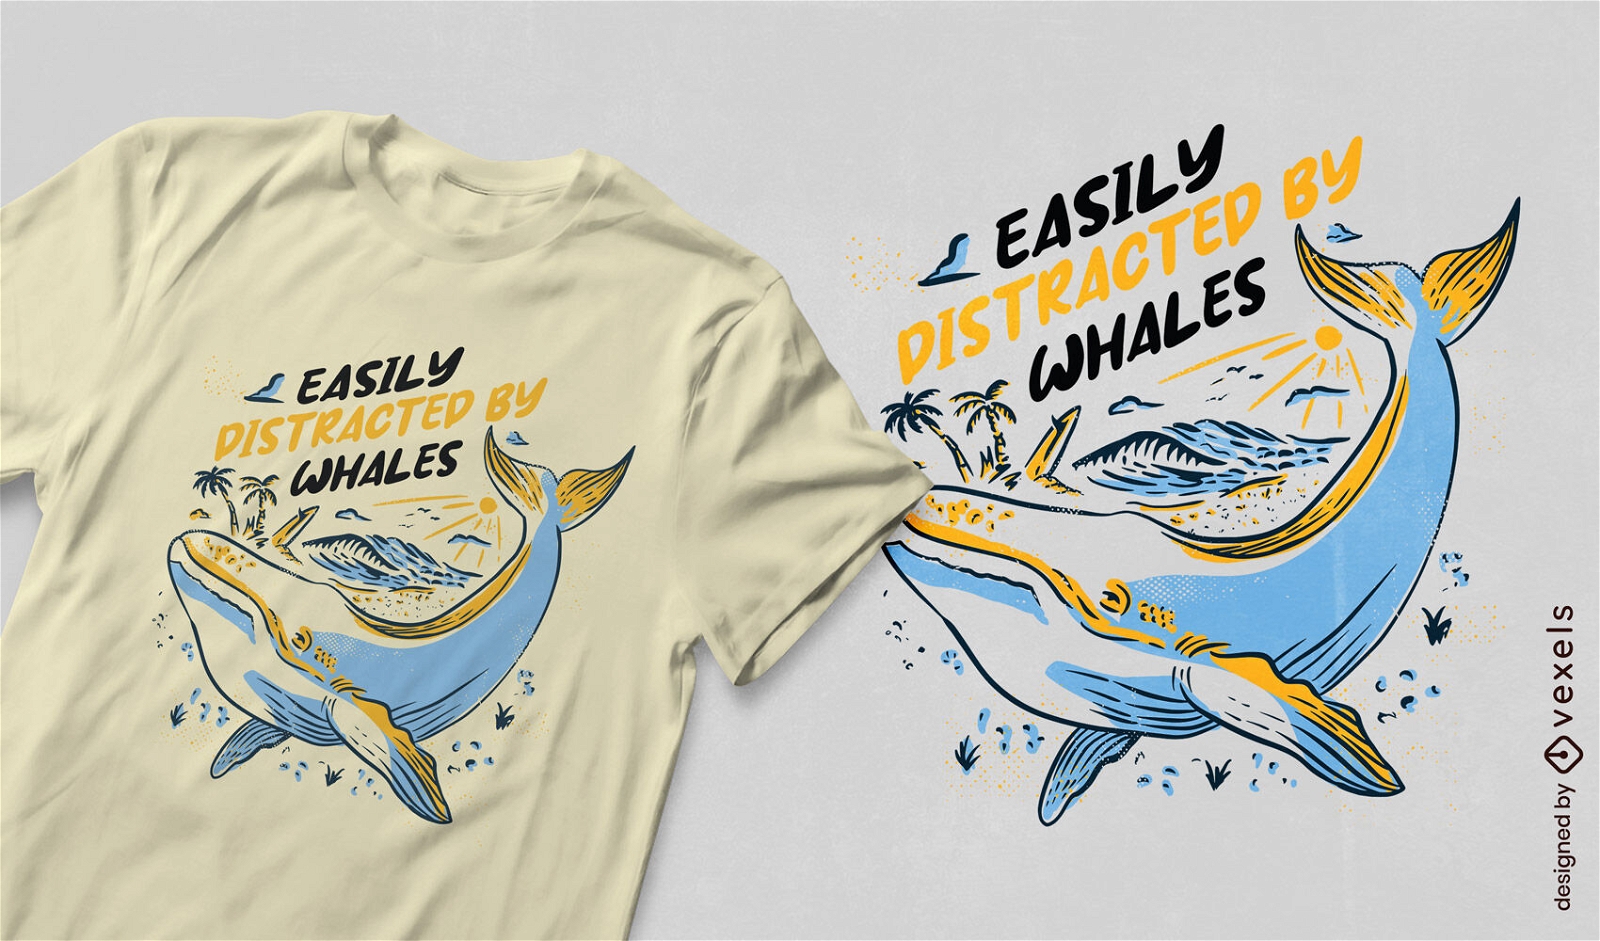 Dise?o de camiseta con cita de distracci?n de ballena caprichosa.